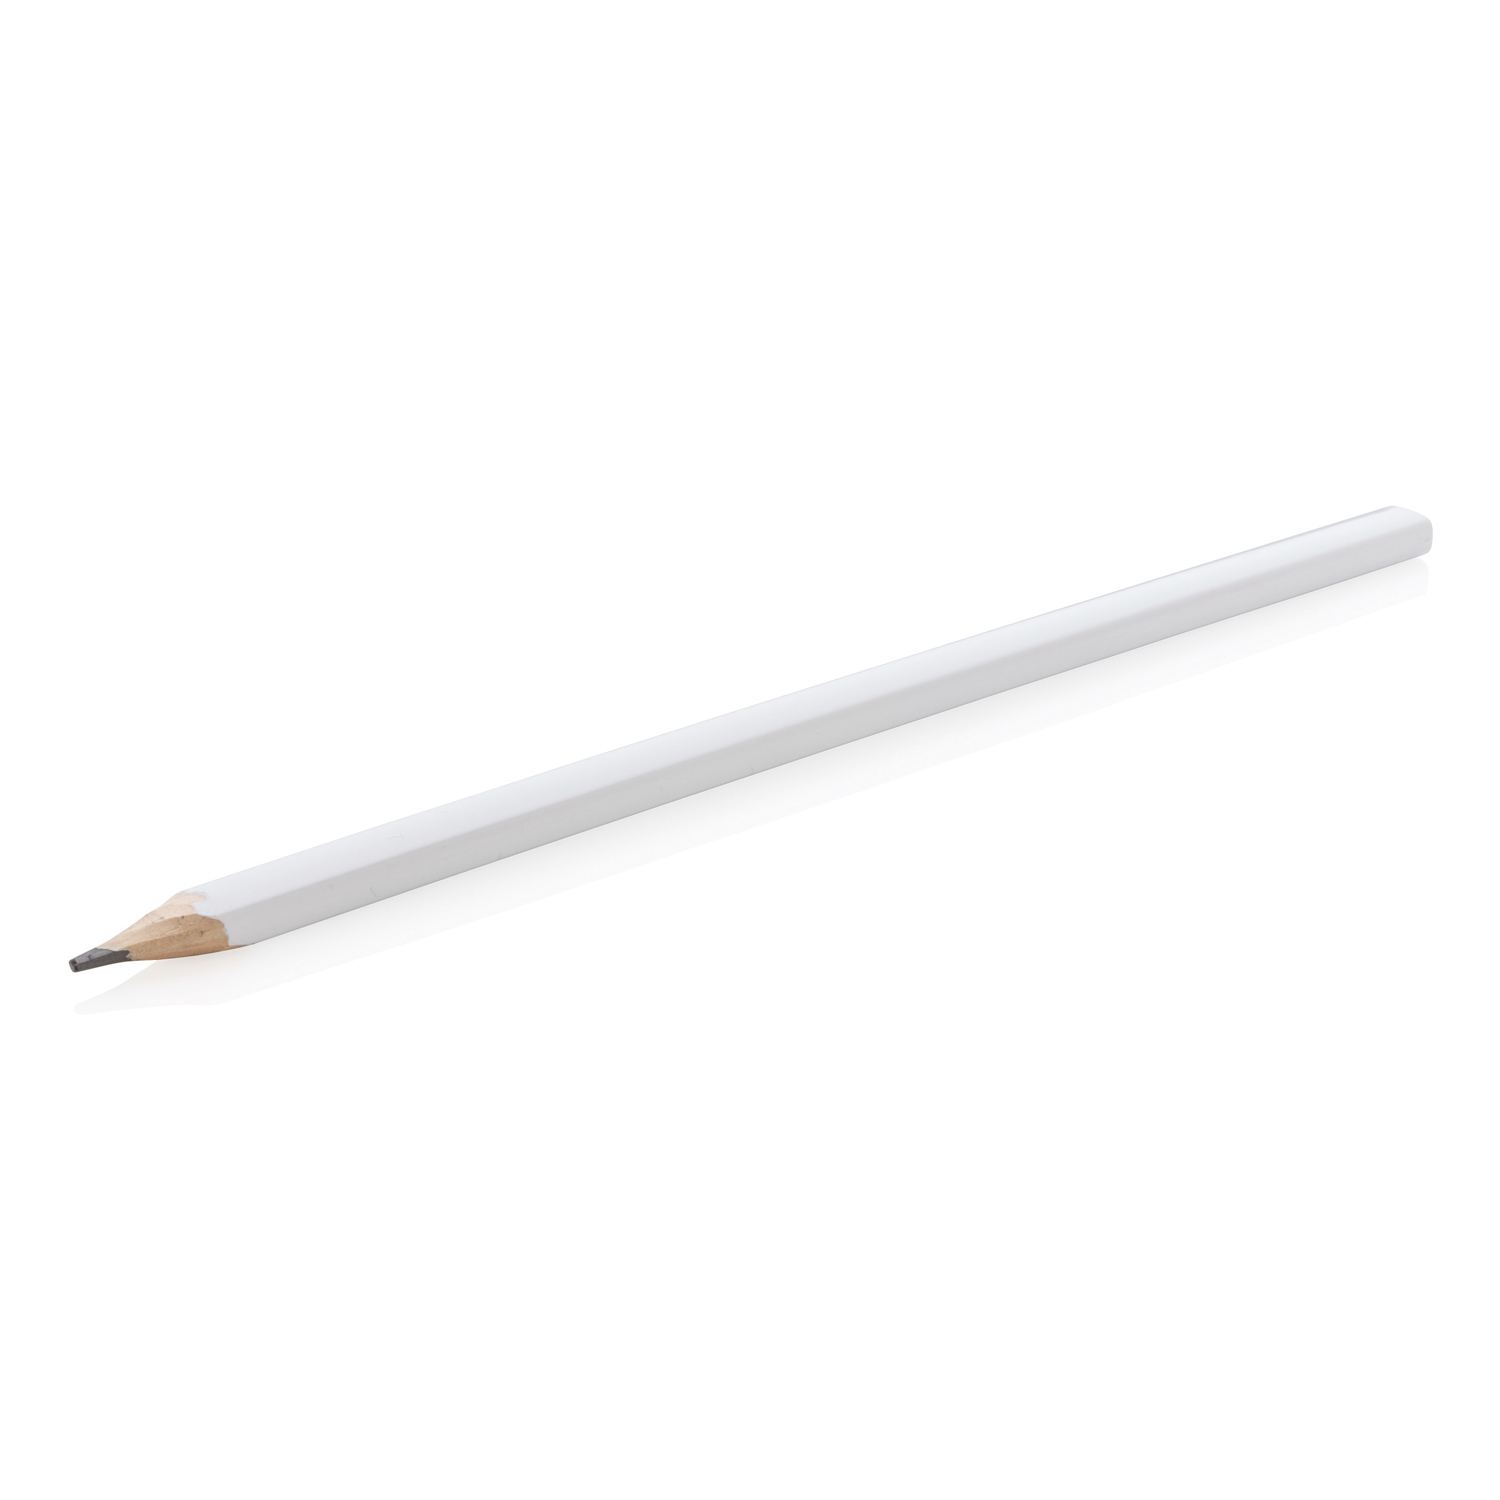 Деревянный карандаш